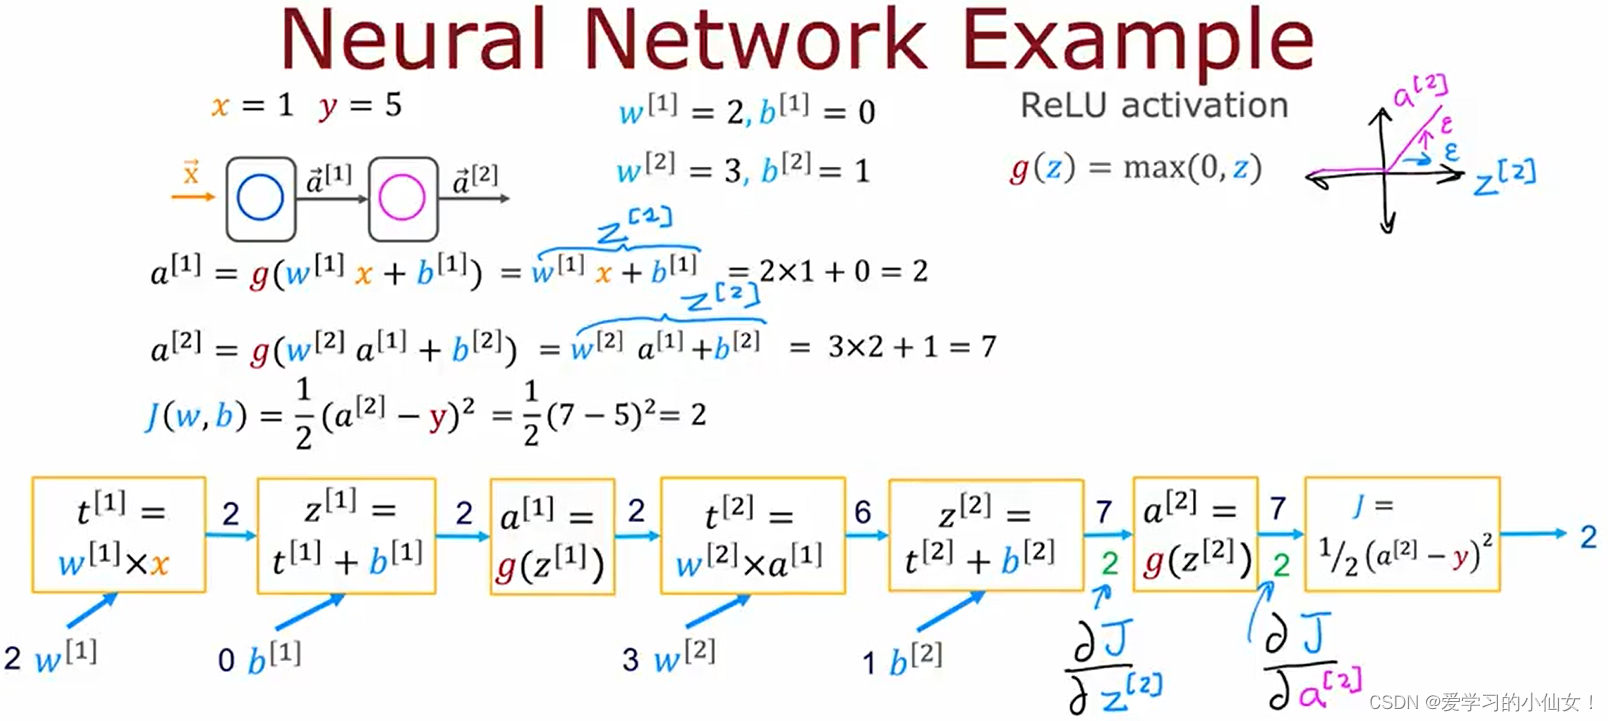 吴恩达机器学习笔记十五 什么是导数 计算图 大型神经网络案例